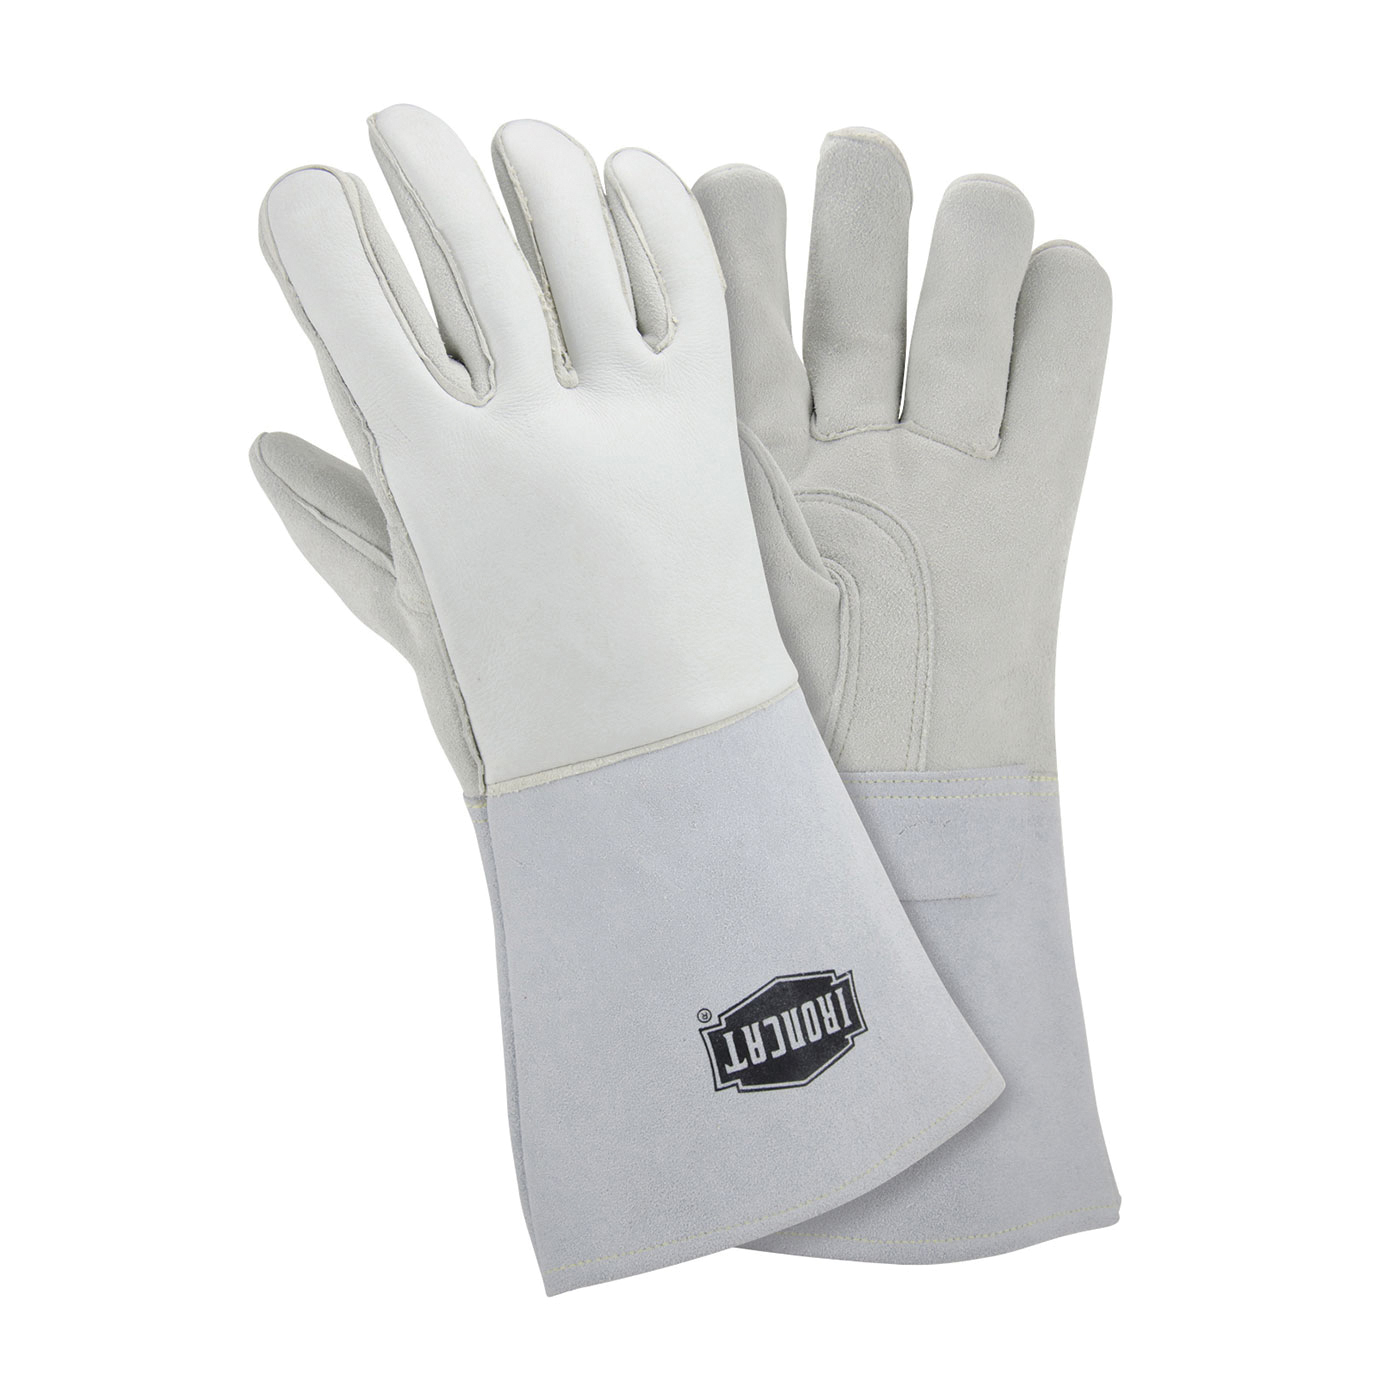 PIP® 9061/M Premium Grade Welding Gloves, M, Kevlar® Thread/Leather, Off-White, Cotton/Foam Lining, Gauntlet Cuff, 14 in L